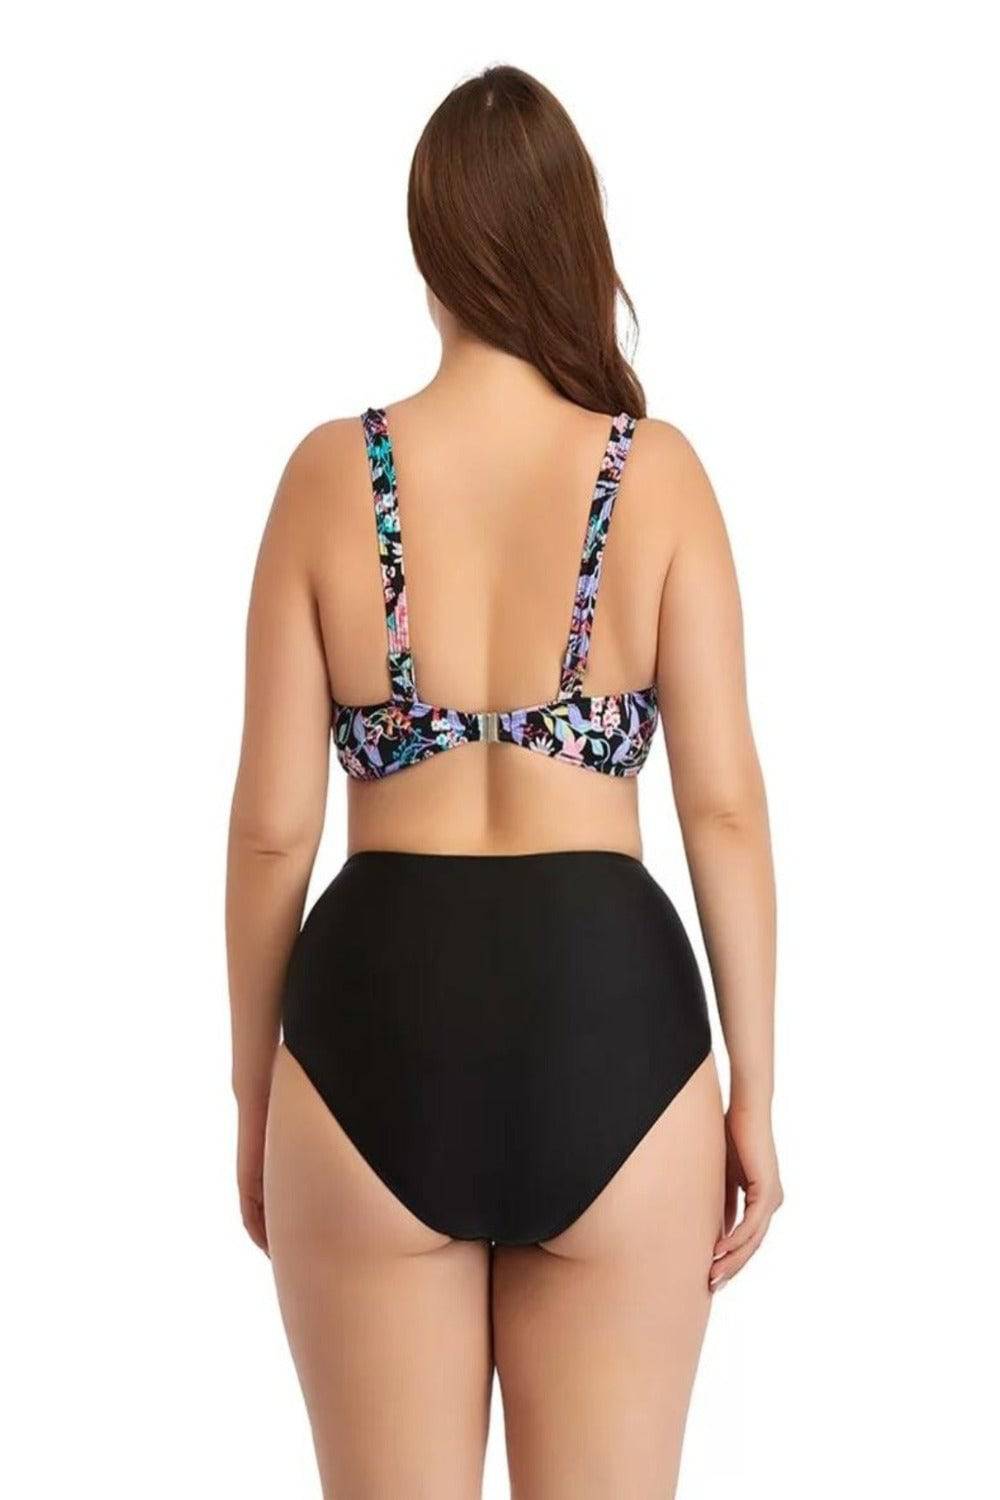 Women Plus Size Swimwear Large Bikini Swimsuit Two-piece High Waist Push Up  26-2